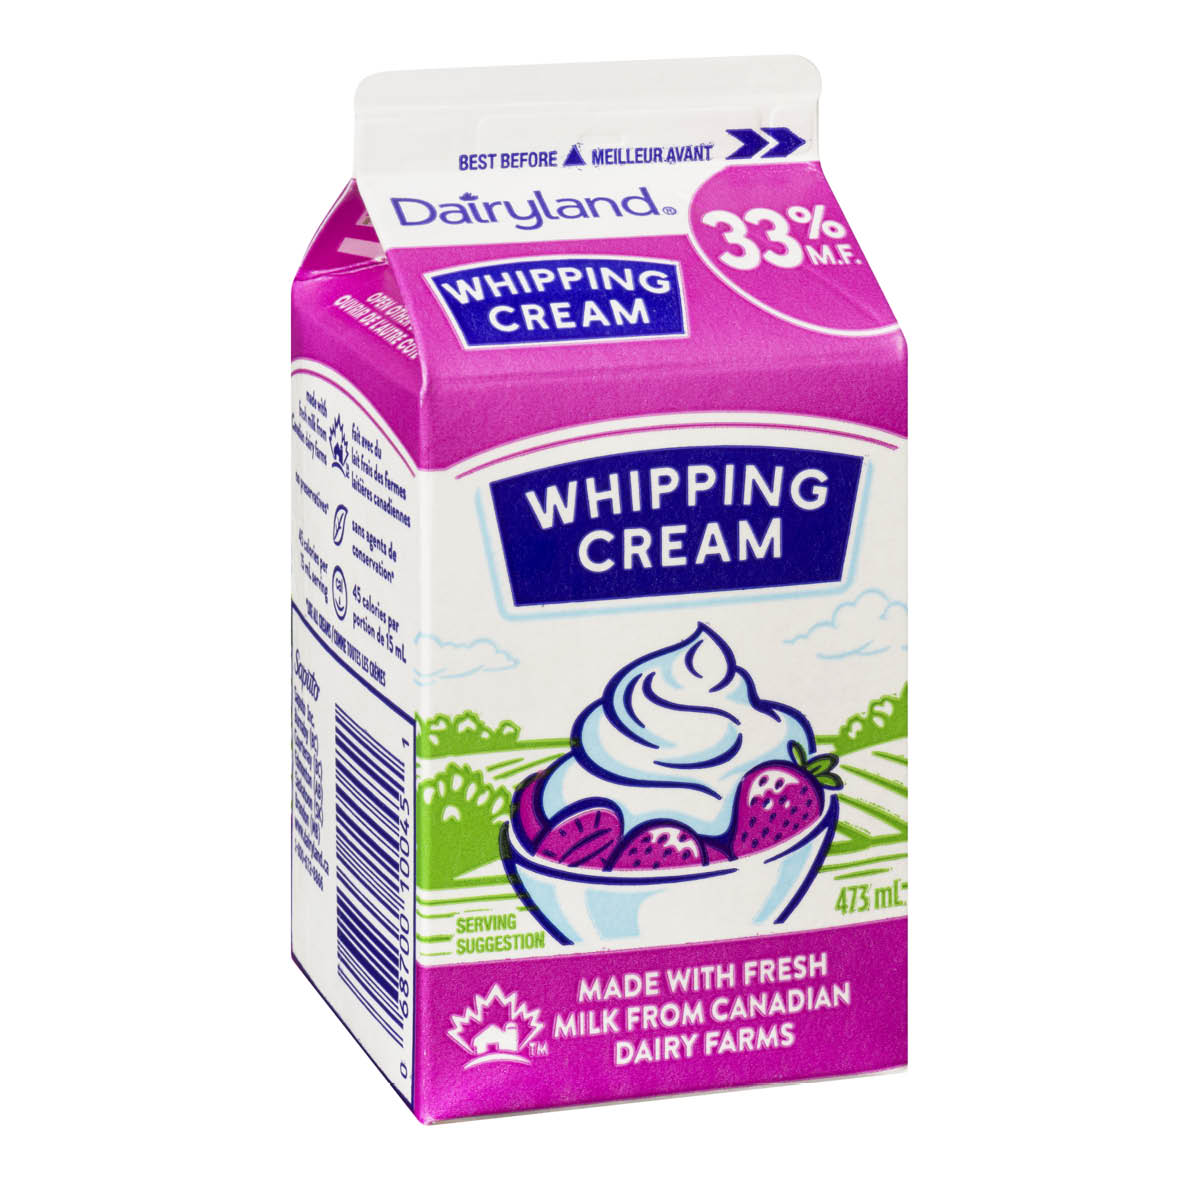 Dairyland Whipping Cream (Heavy Cream) 33% M.F., 473ml